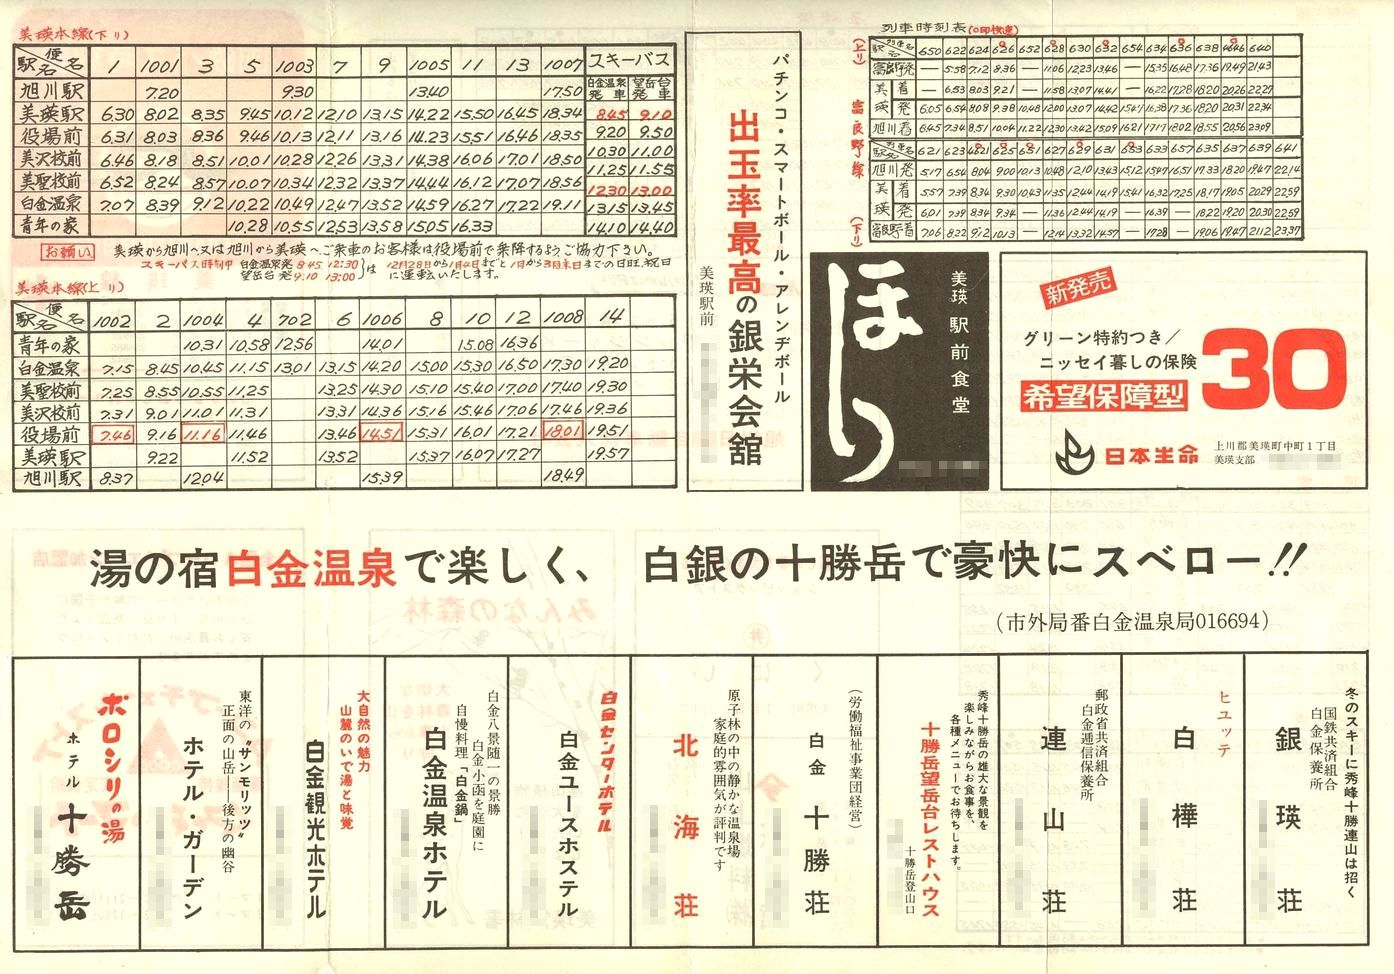 1975-12-15改正_国鉄バス_美瑛線時刻表裏面